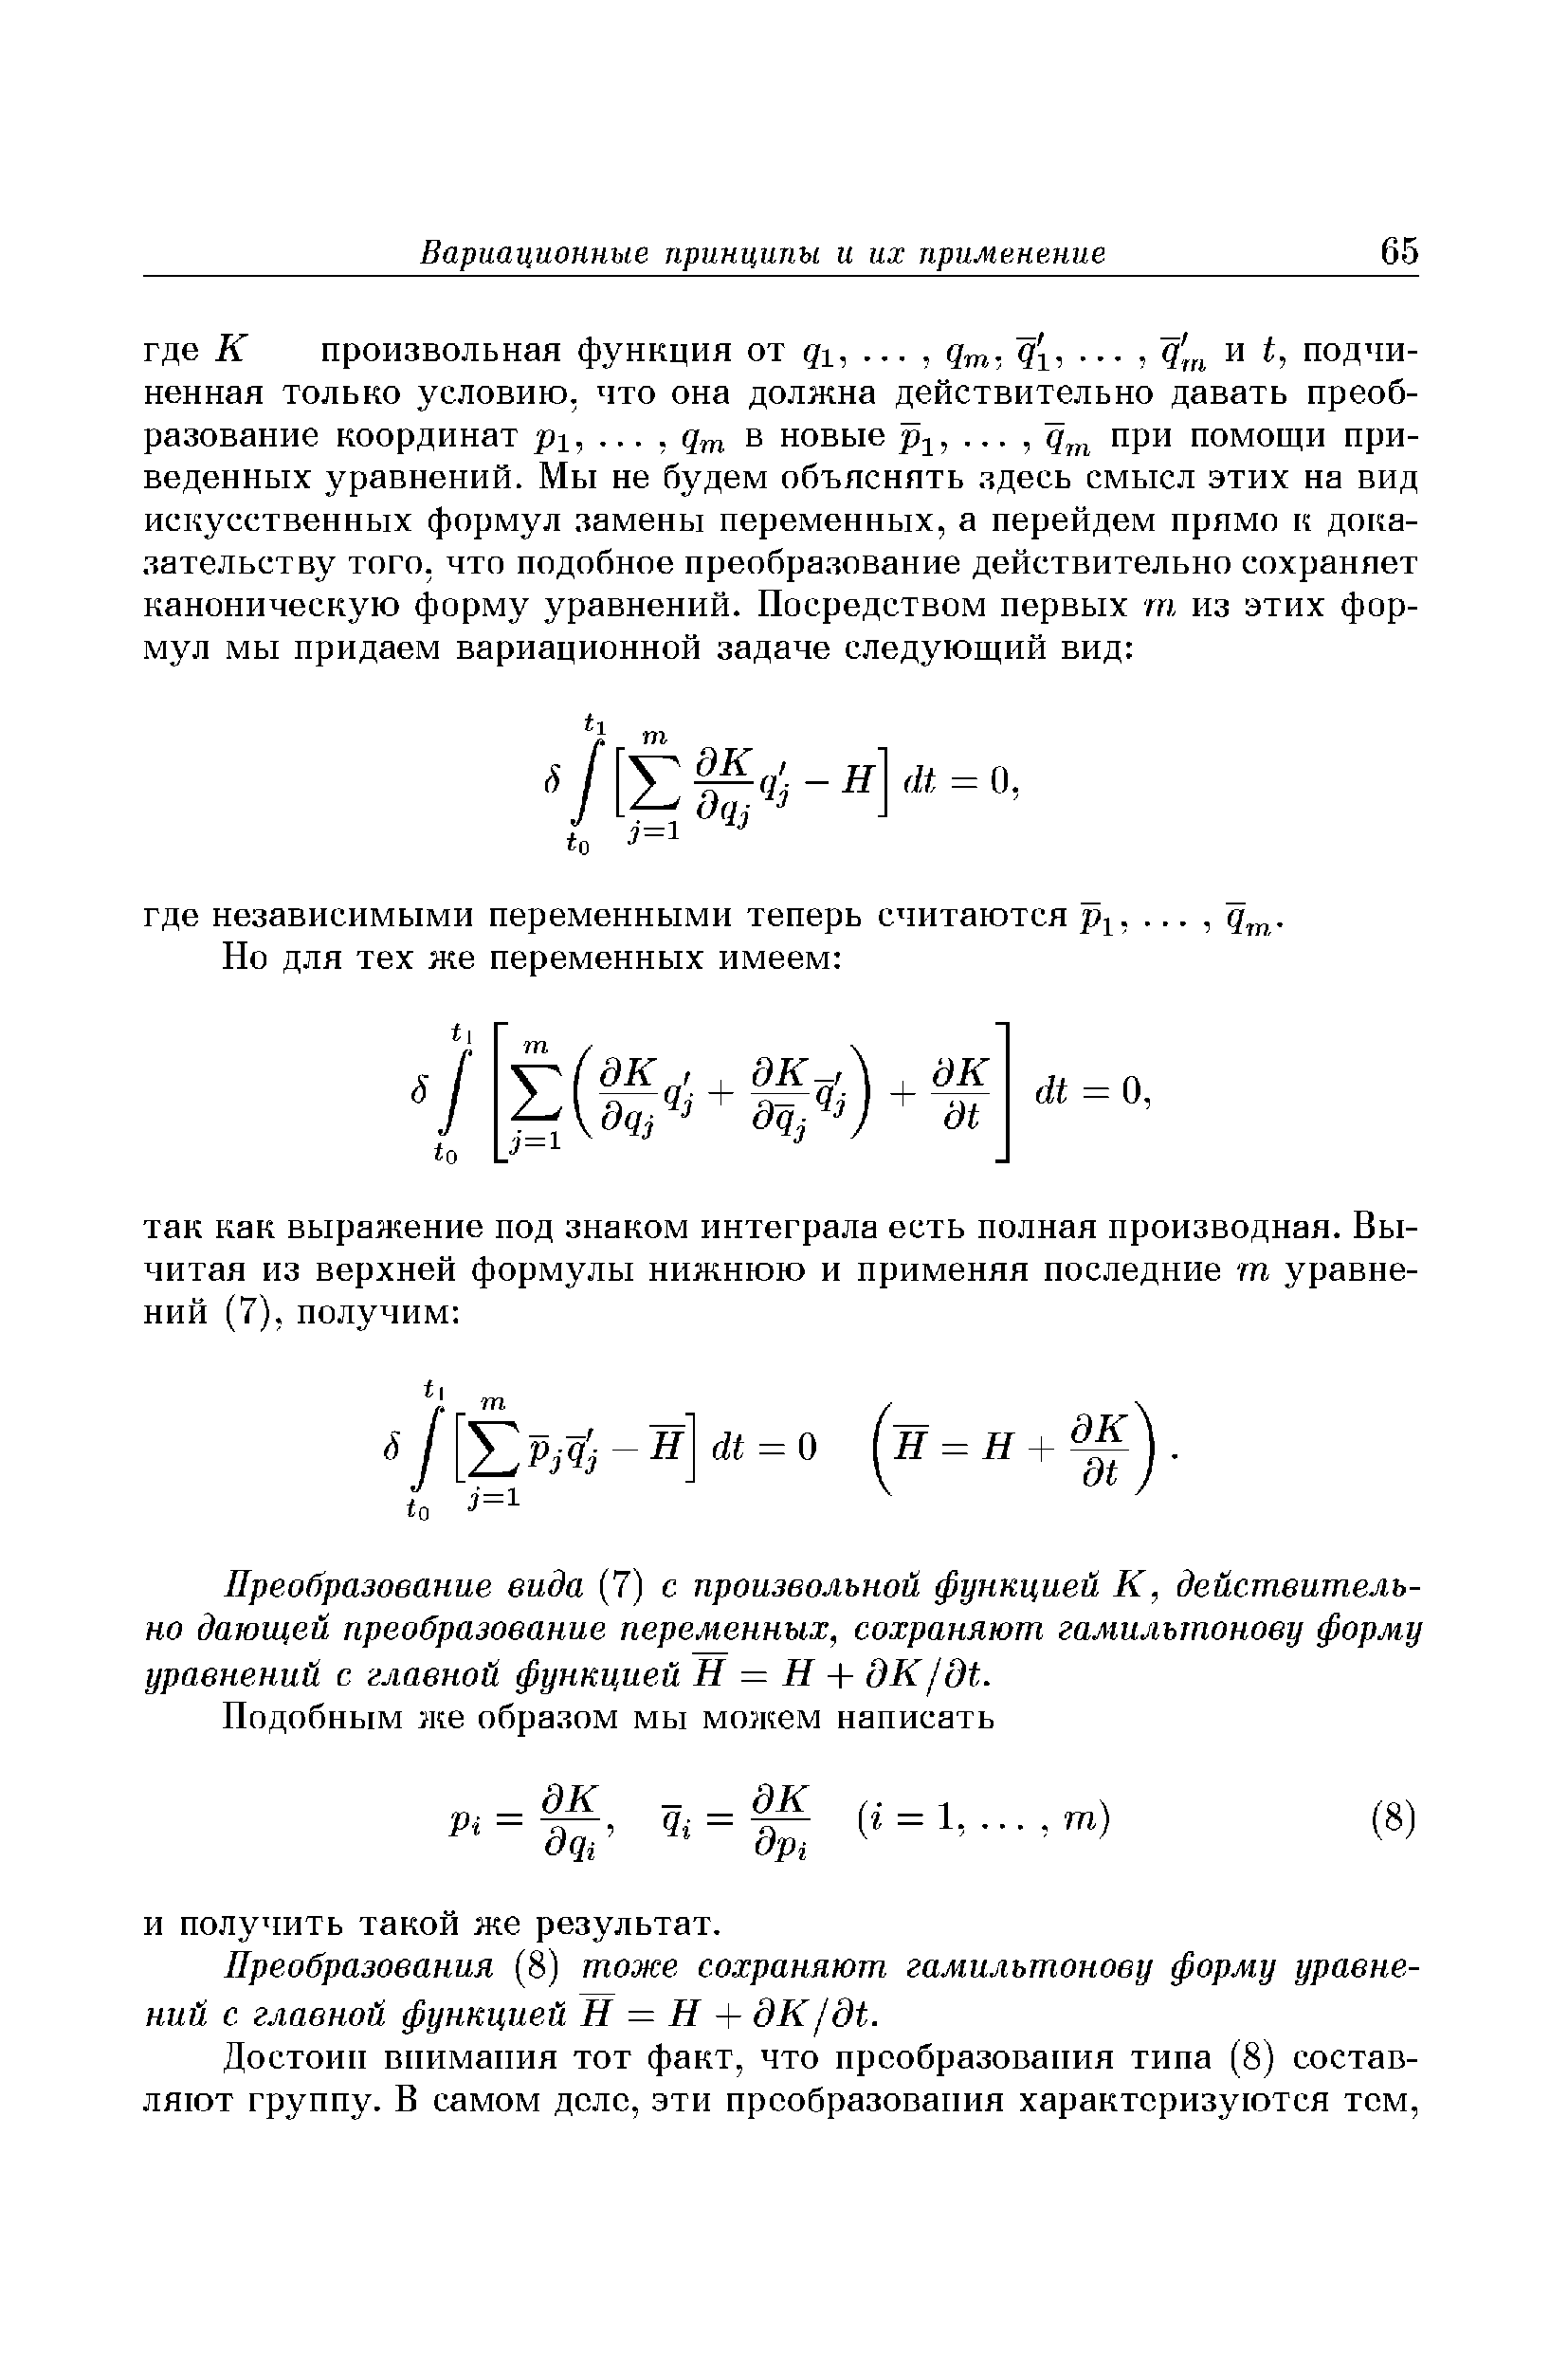 Преобразование вида (7) с произвольной функцией К, действительно дающей преобразование переменных, сохраняют гамильтонову форму уравнений с главной функцией Н = Н + дК/дЬ.
